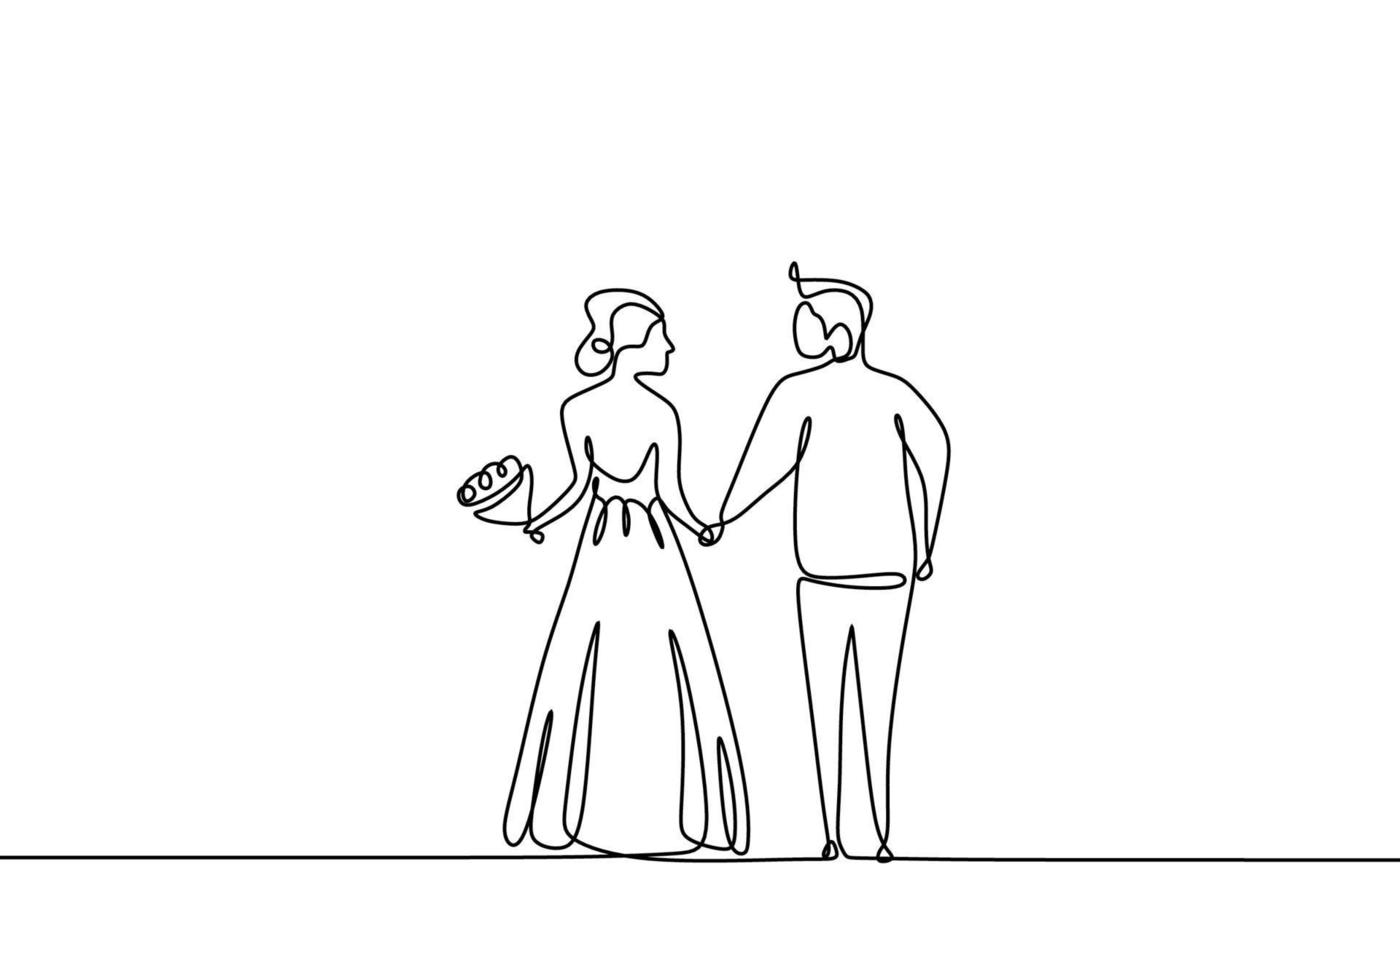 ligne de dessin, de jeunes mariés se tenant la main prenant le mariage avant. couple romantique mariage une ligne. vecteur